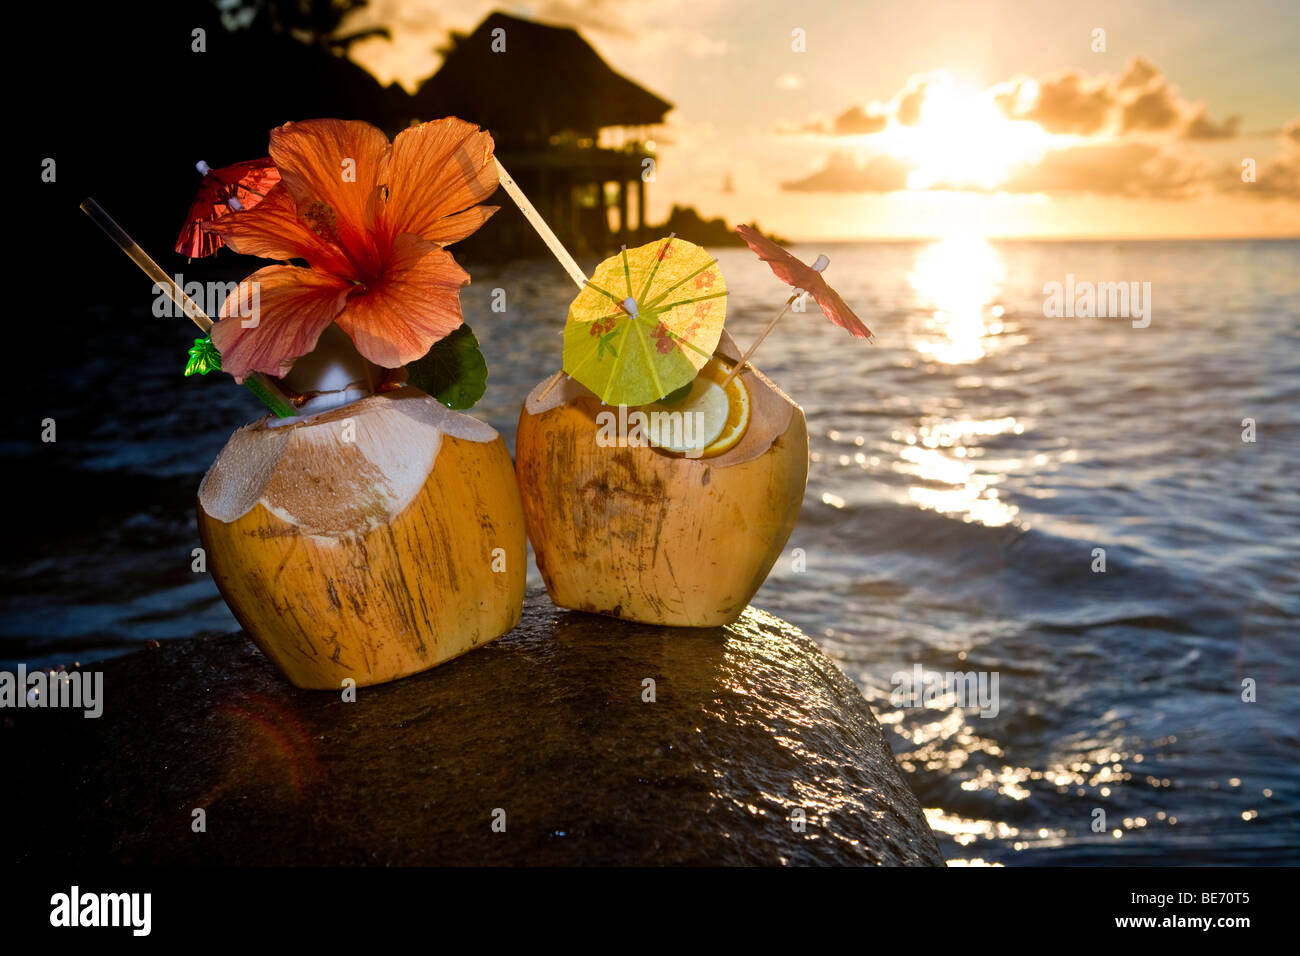 Deux noix de coco avec des cocktails et des décorations sur un rocher de granit au coucher du soleil, les Seychelles, océan Indien, Afrique Banque D'Images